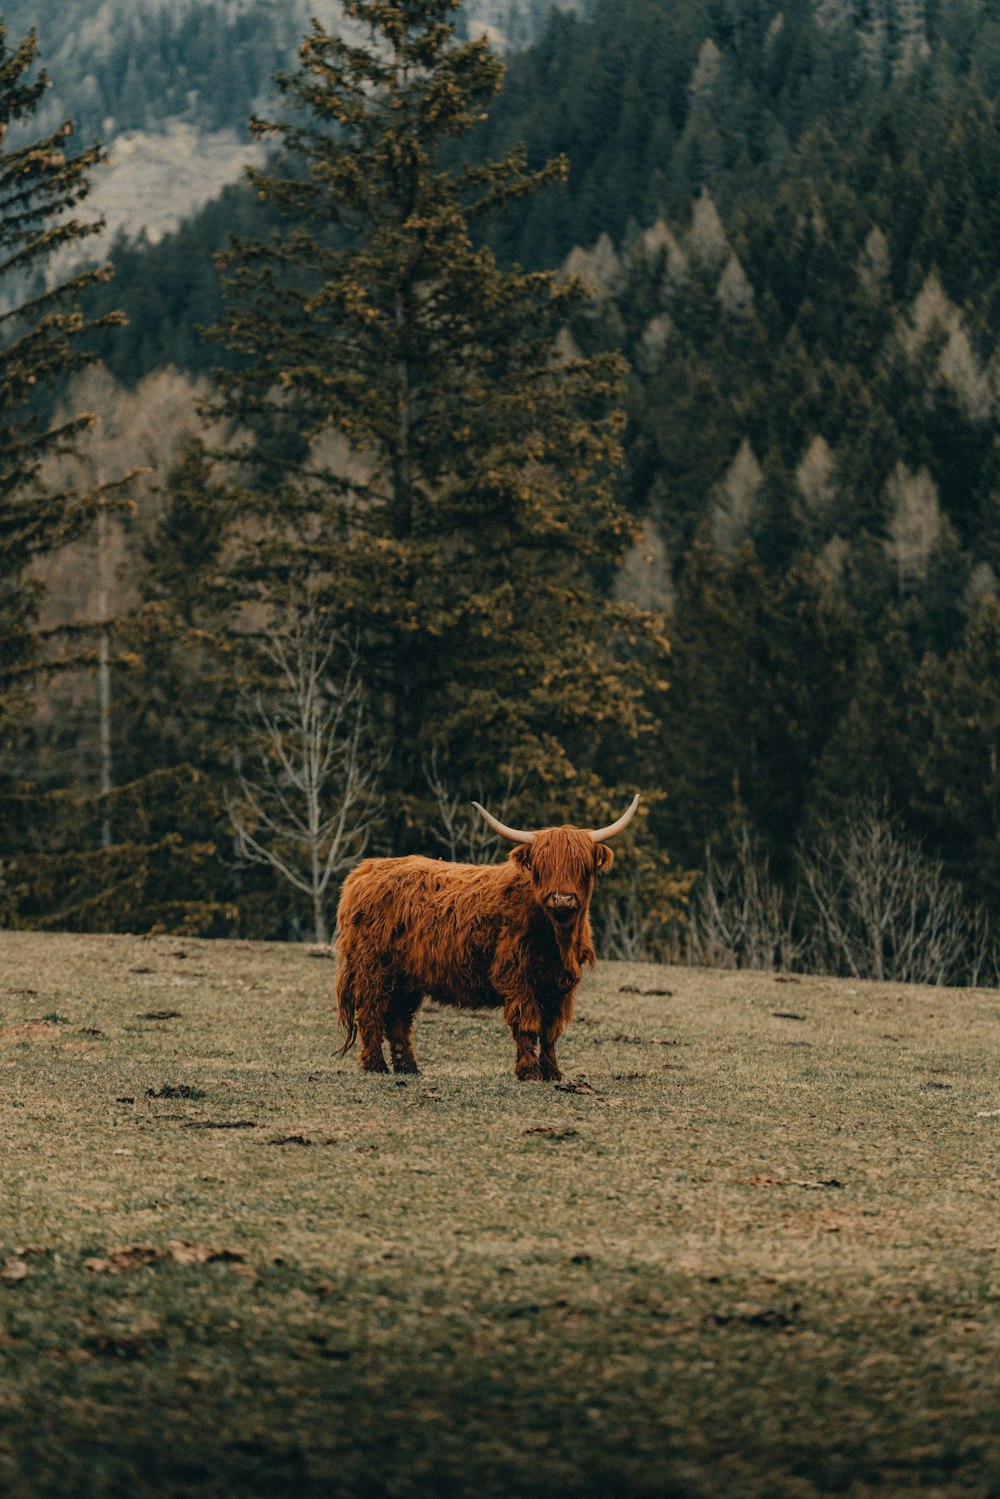 풀로 덮인 들판 위에 서 있는 갈색 소